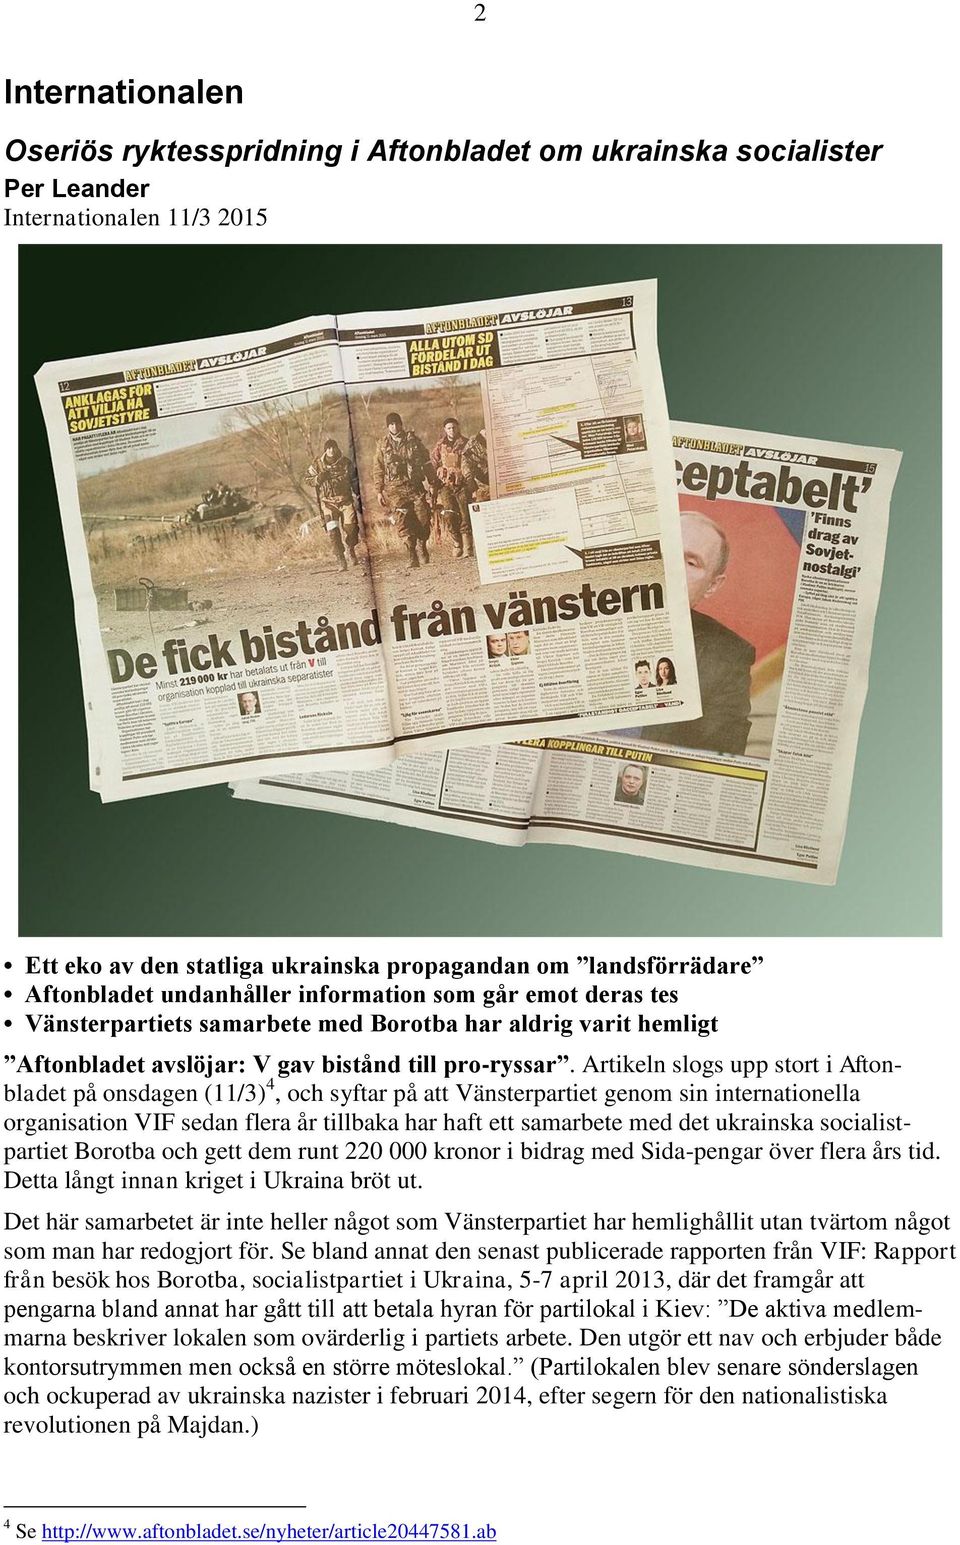 Artikeln slogs upp stort i Aftonbladet på onsdagen (11/3) 4, och syftar på att Vänsterpartiet genom sin internationella organisation VIF sedan flera år tillbaka har haft ett samarbete med det